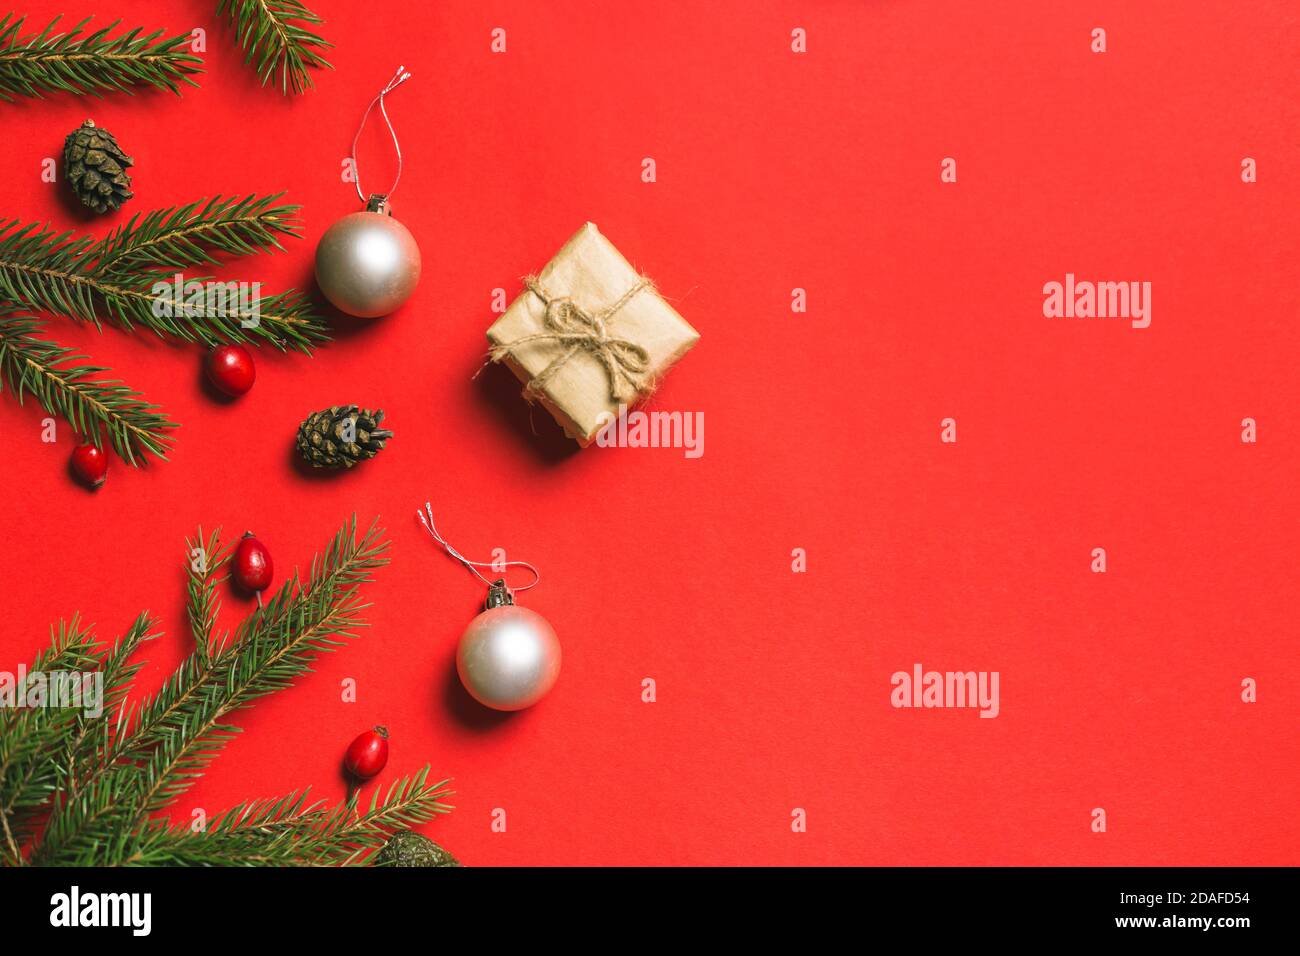 Composition de Noël. Cadre fait de cadeaux de noël, branches de pin, isolé sur fond rouge. Flat lay, vue de dessus Banque D'Images